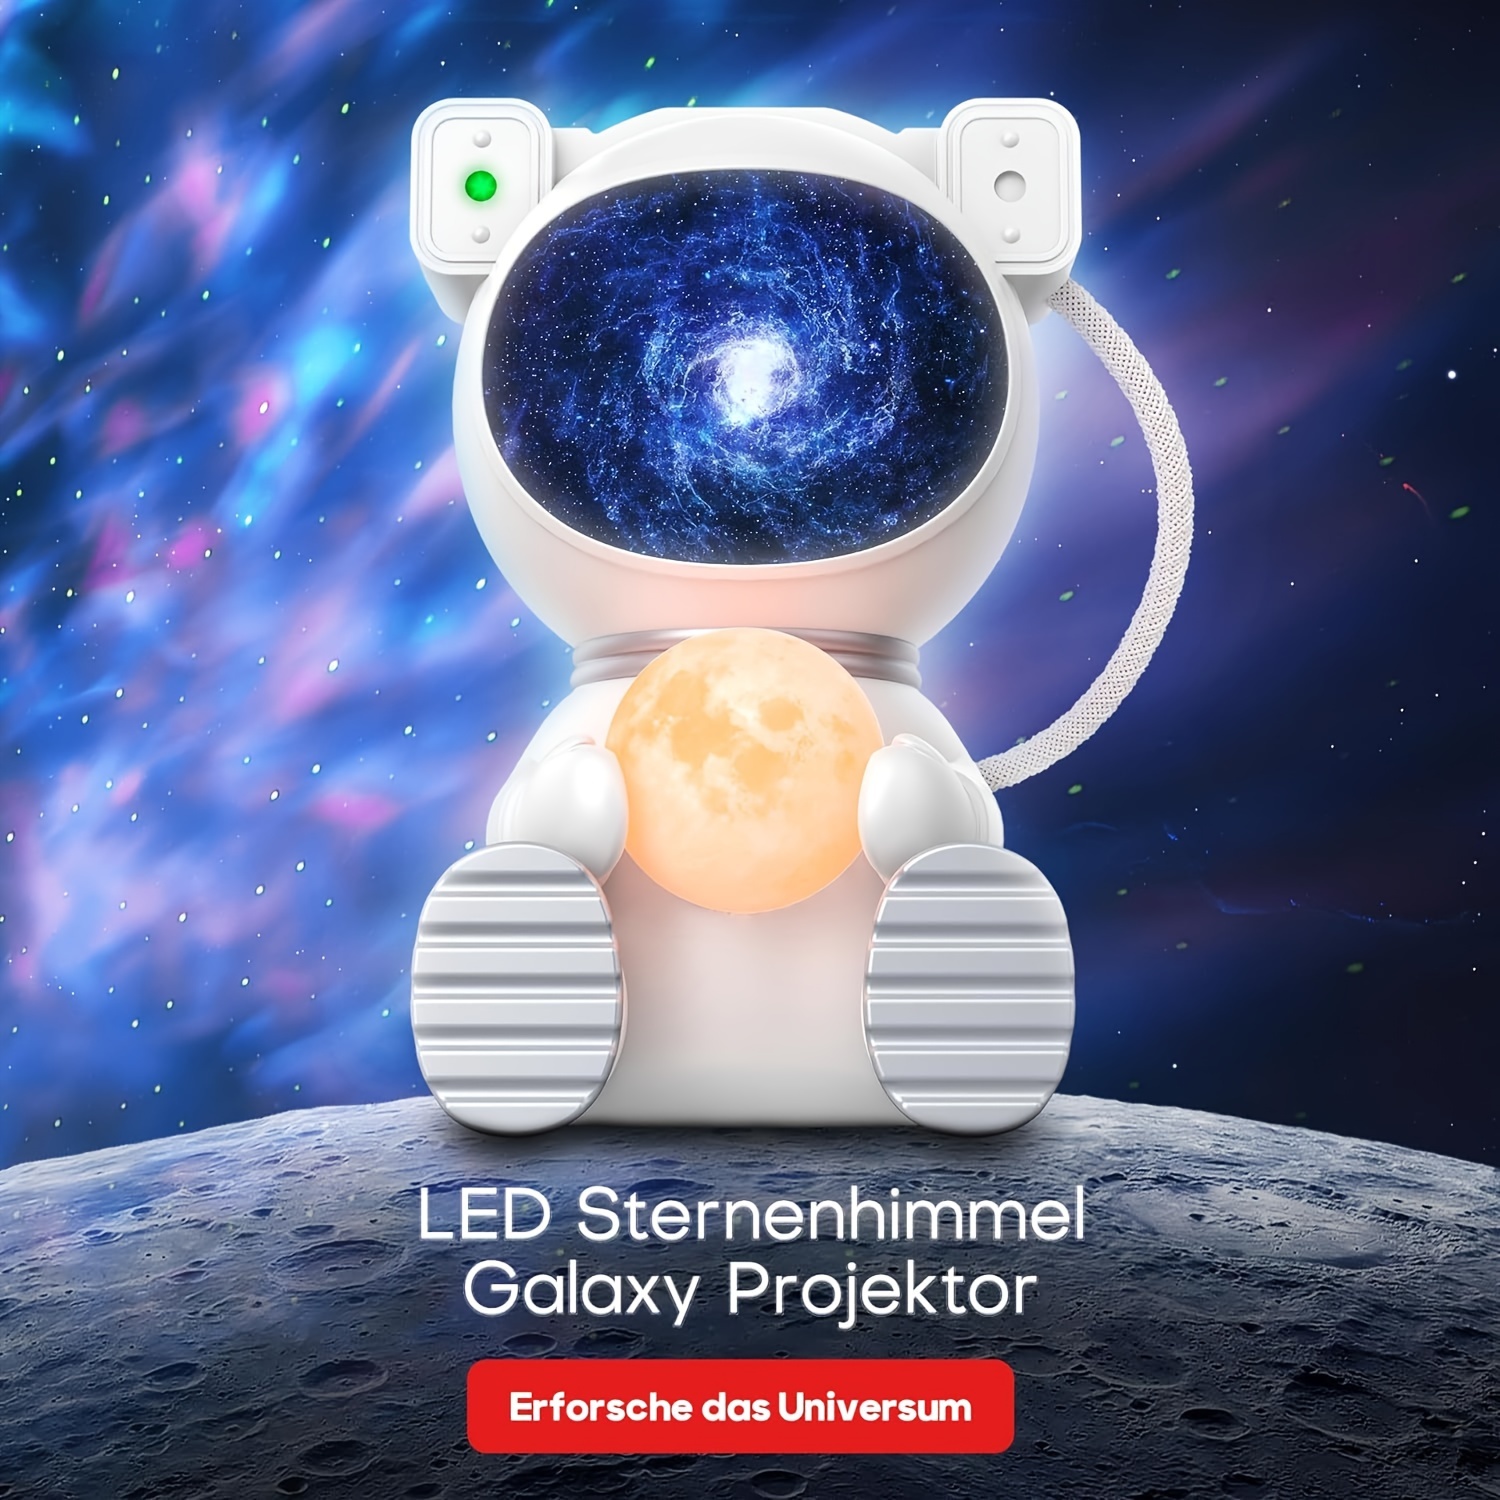 Led Astronaut Projecteur Ciel Étoilé Galaxy Projector - Lampe